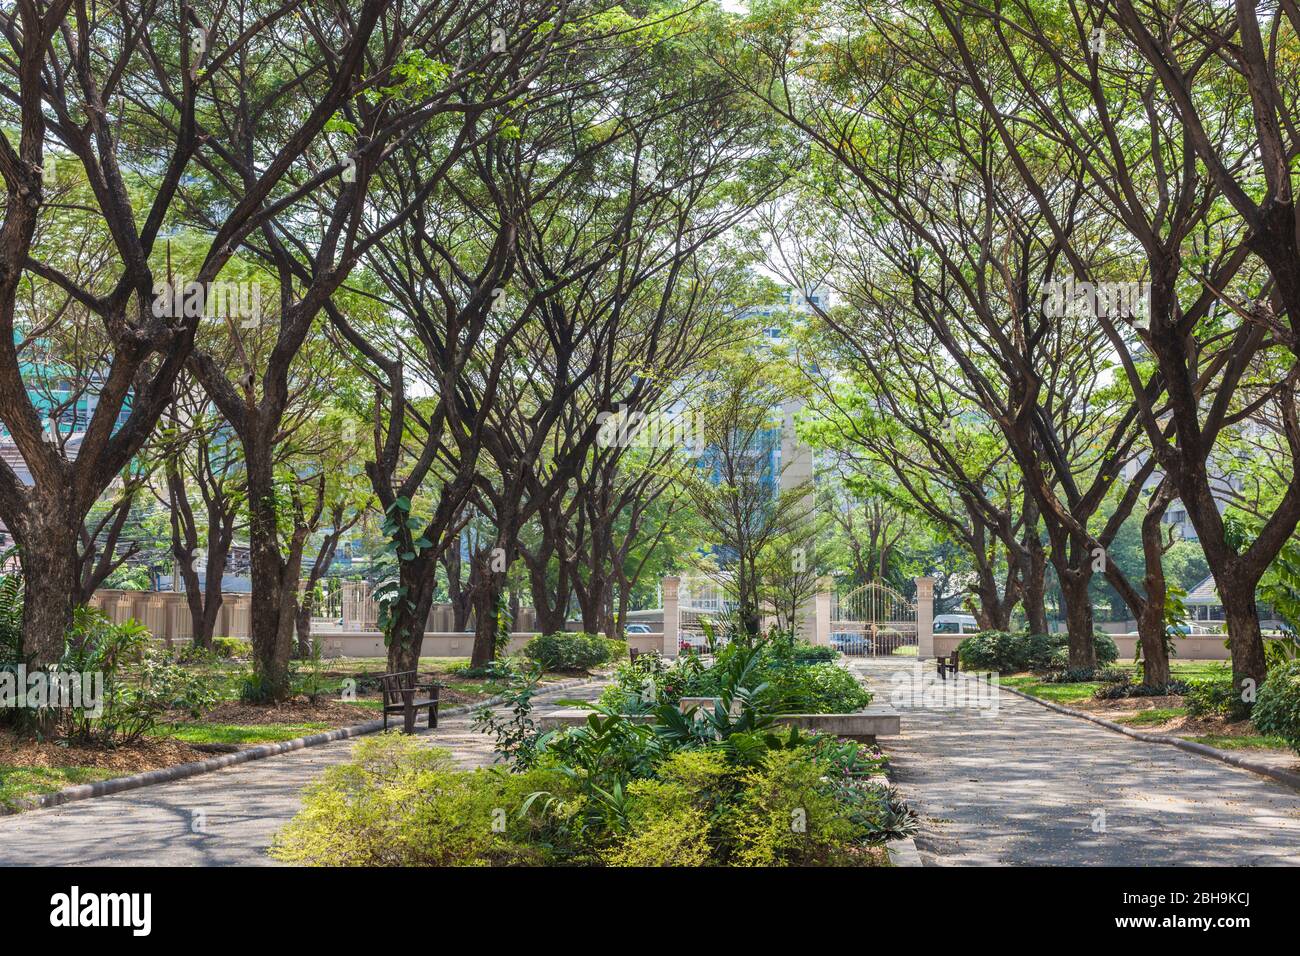 Thaïlande, Bangkok, Sukhumvit Area, le jardin du Chuvit, parc construit par le Chuvit Kamolvisit, le plus grand propriétaire de salon de massage et politicien de Bangkok Banque D'Images